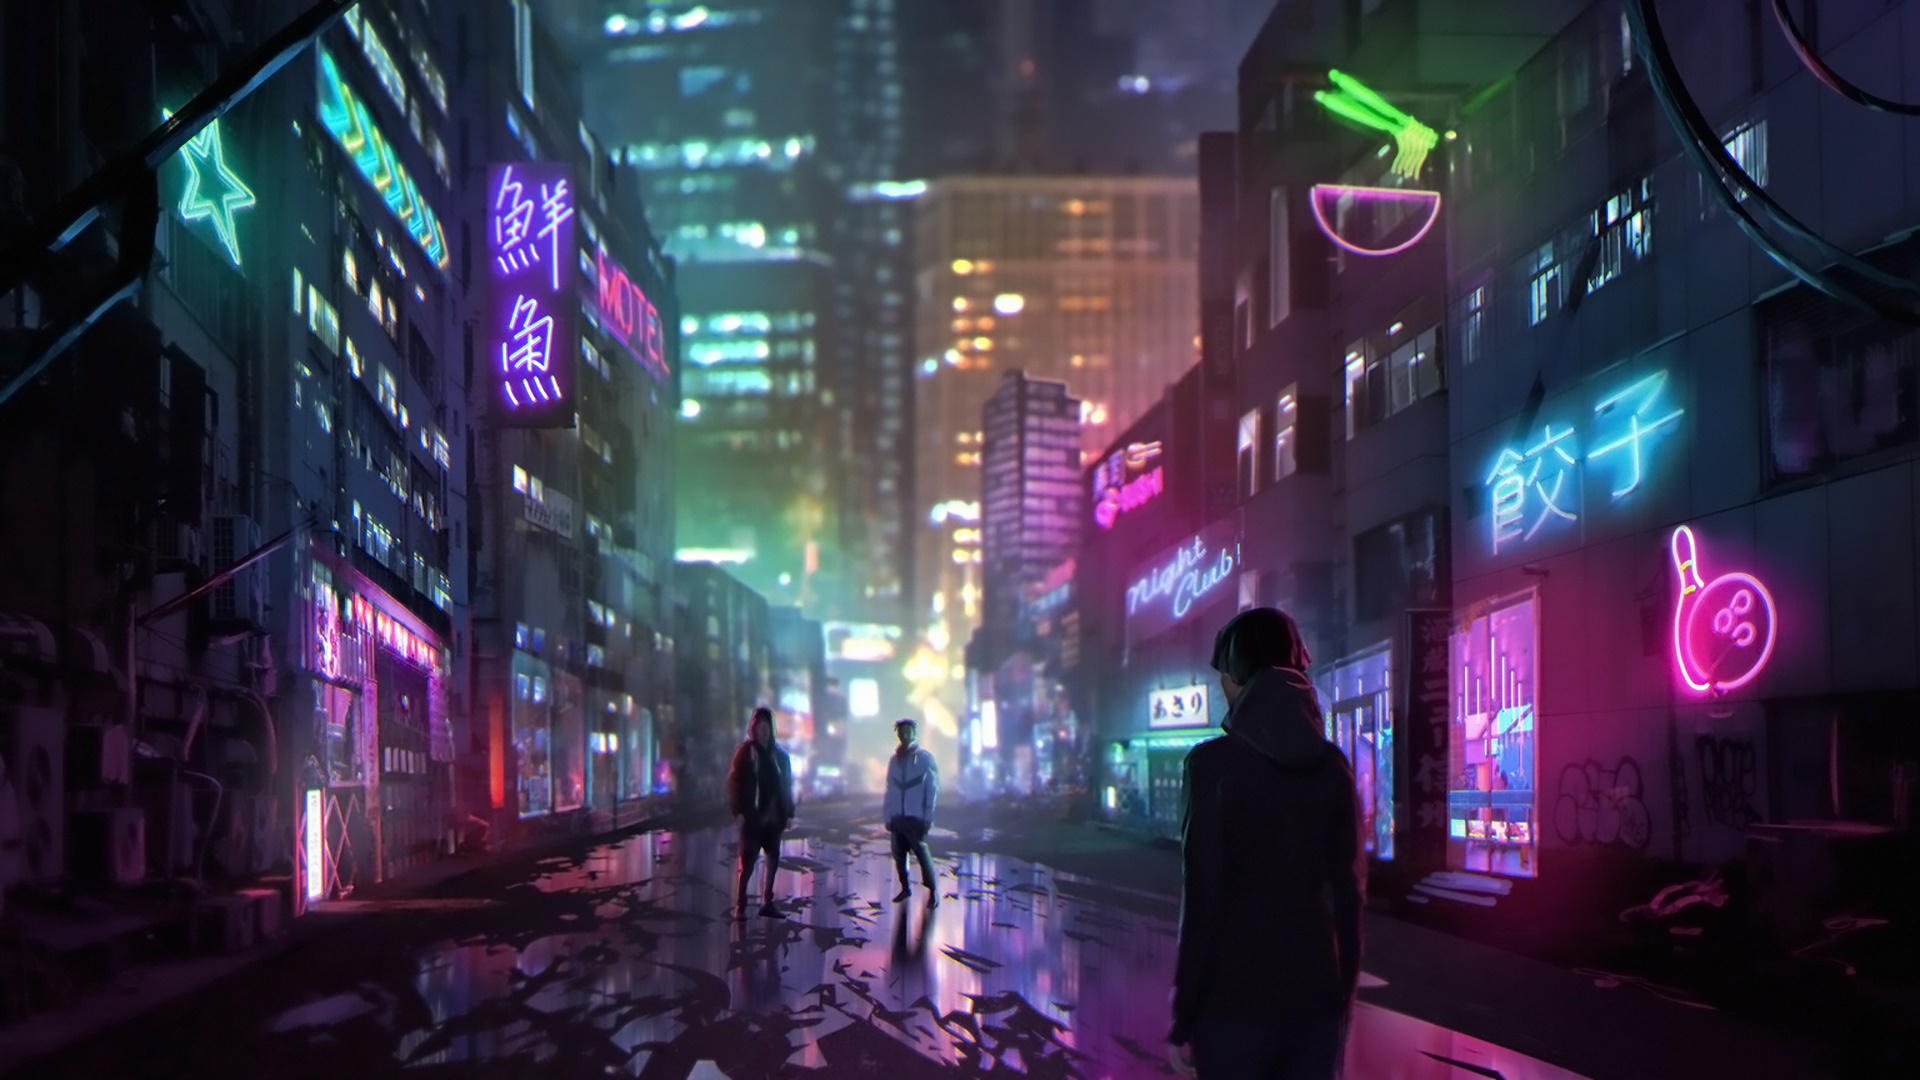 Anime baseado em Cyberpunk: 2077 estreia na Netflix com aprovação de 100%